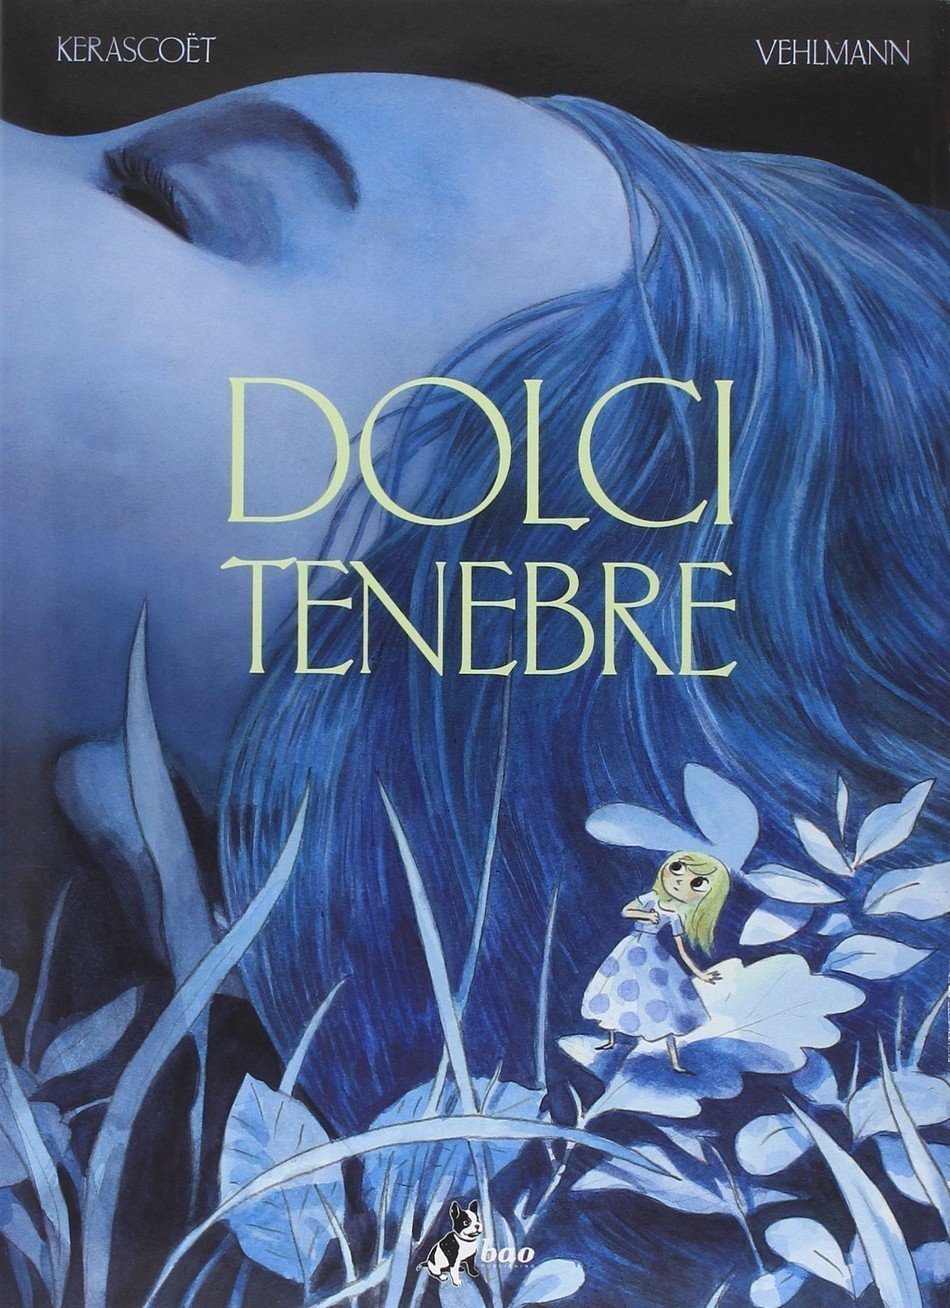 dolci-tenebre-cover